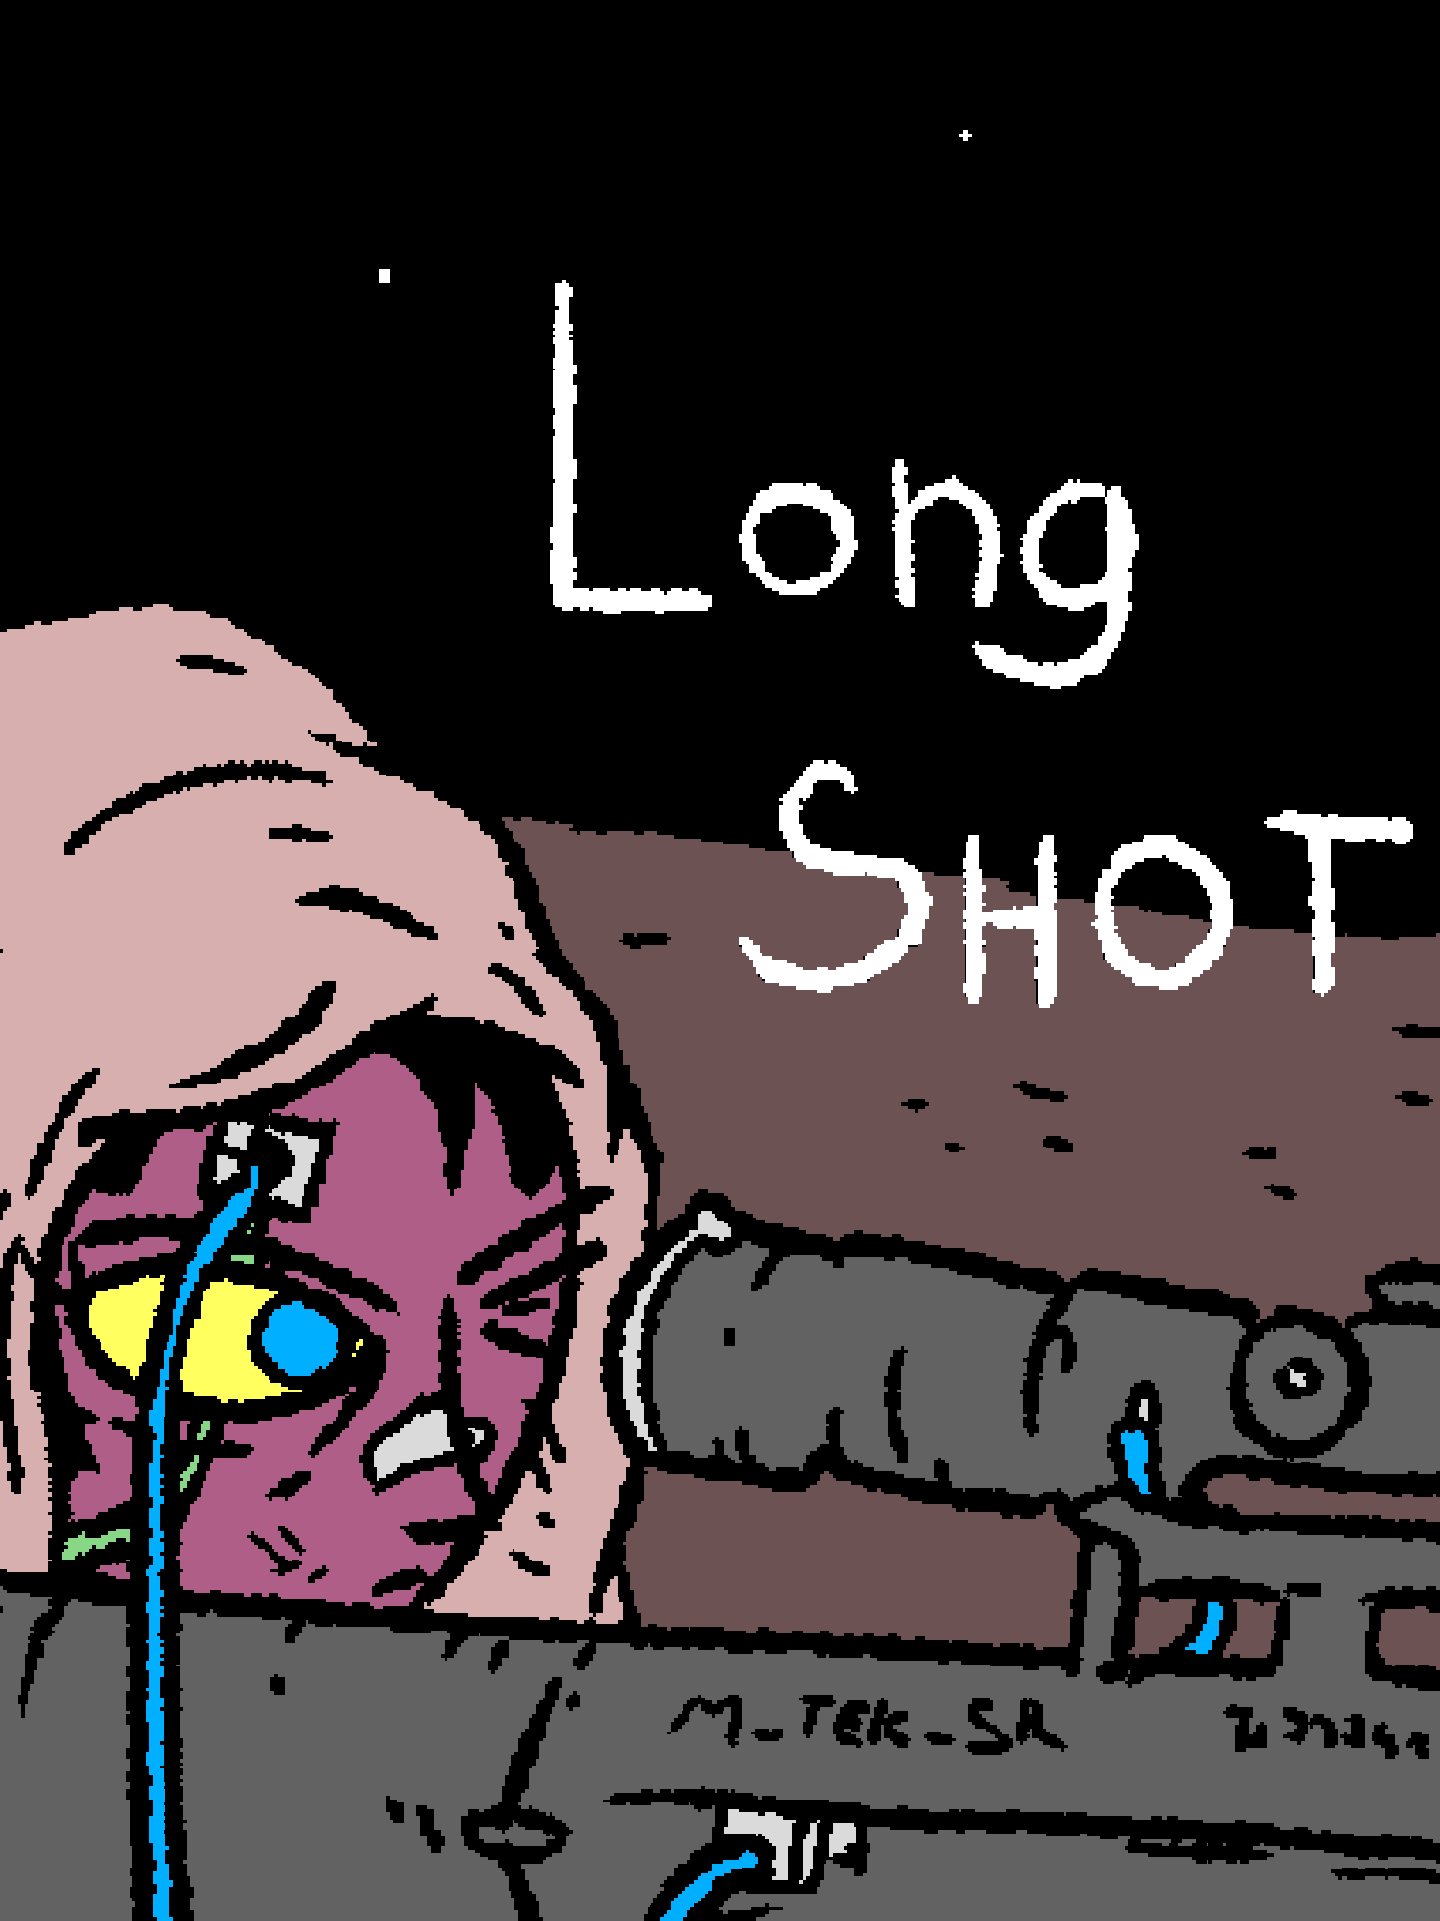 Long Shot